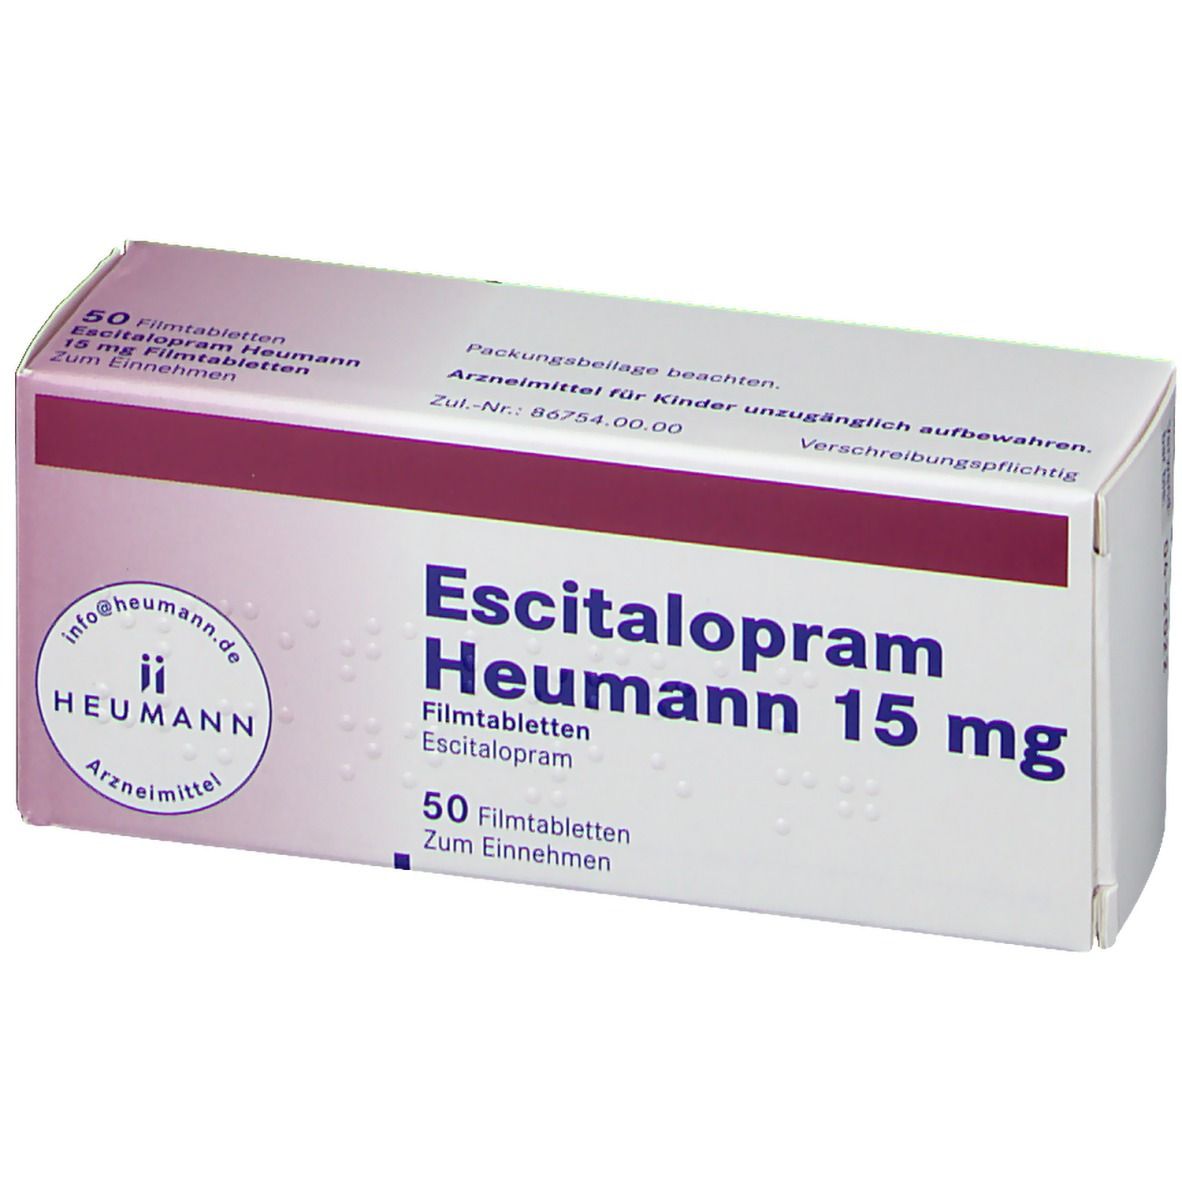 Escitalopram Heumann 15 mg